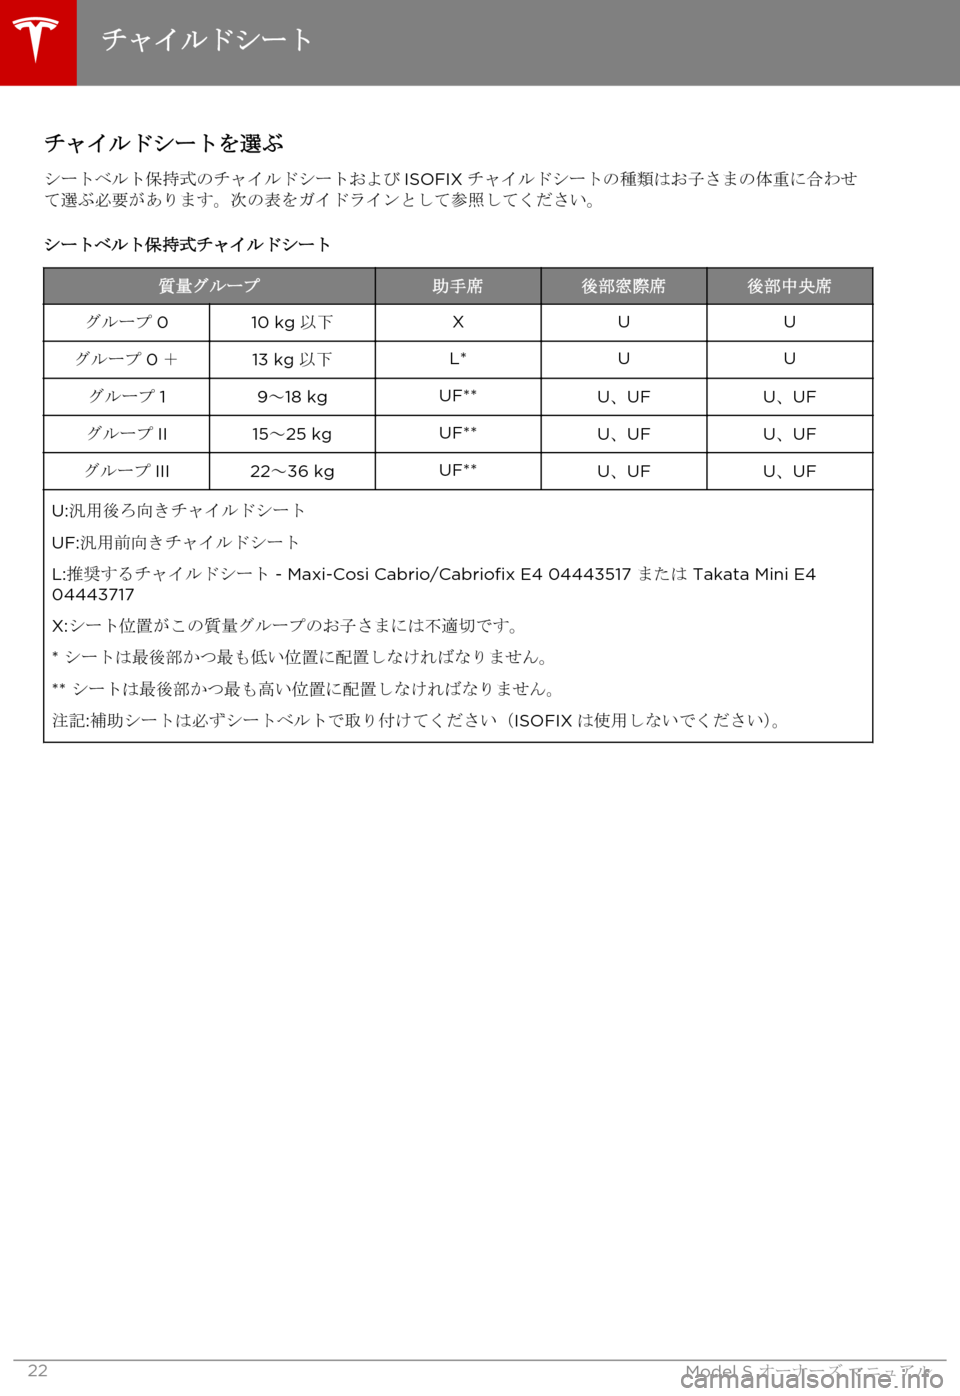 TESLA MODEL S 2015  取扱説明書 (in Japanese)  チャイルドシートを選ぶ
シートベルト保持式のチャイルドシートおよびISOFIXチャイルドシートの種類はお子さまの体重に合わせて選ぶ必要がありま�